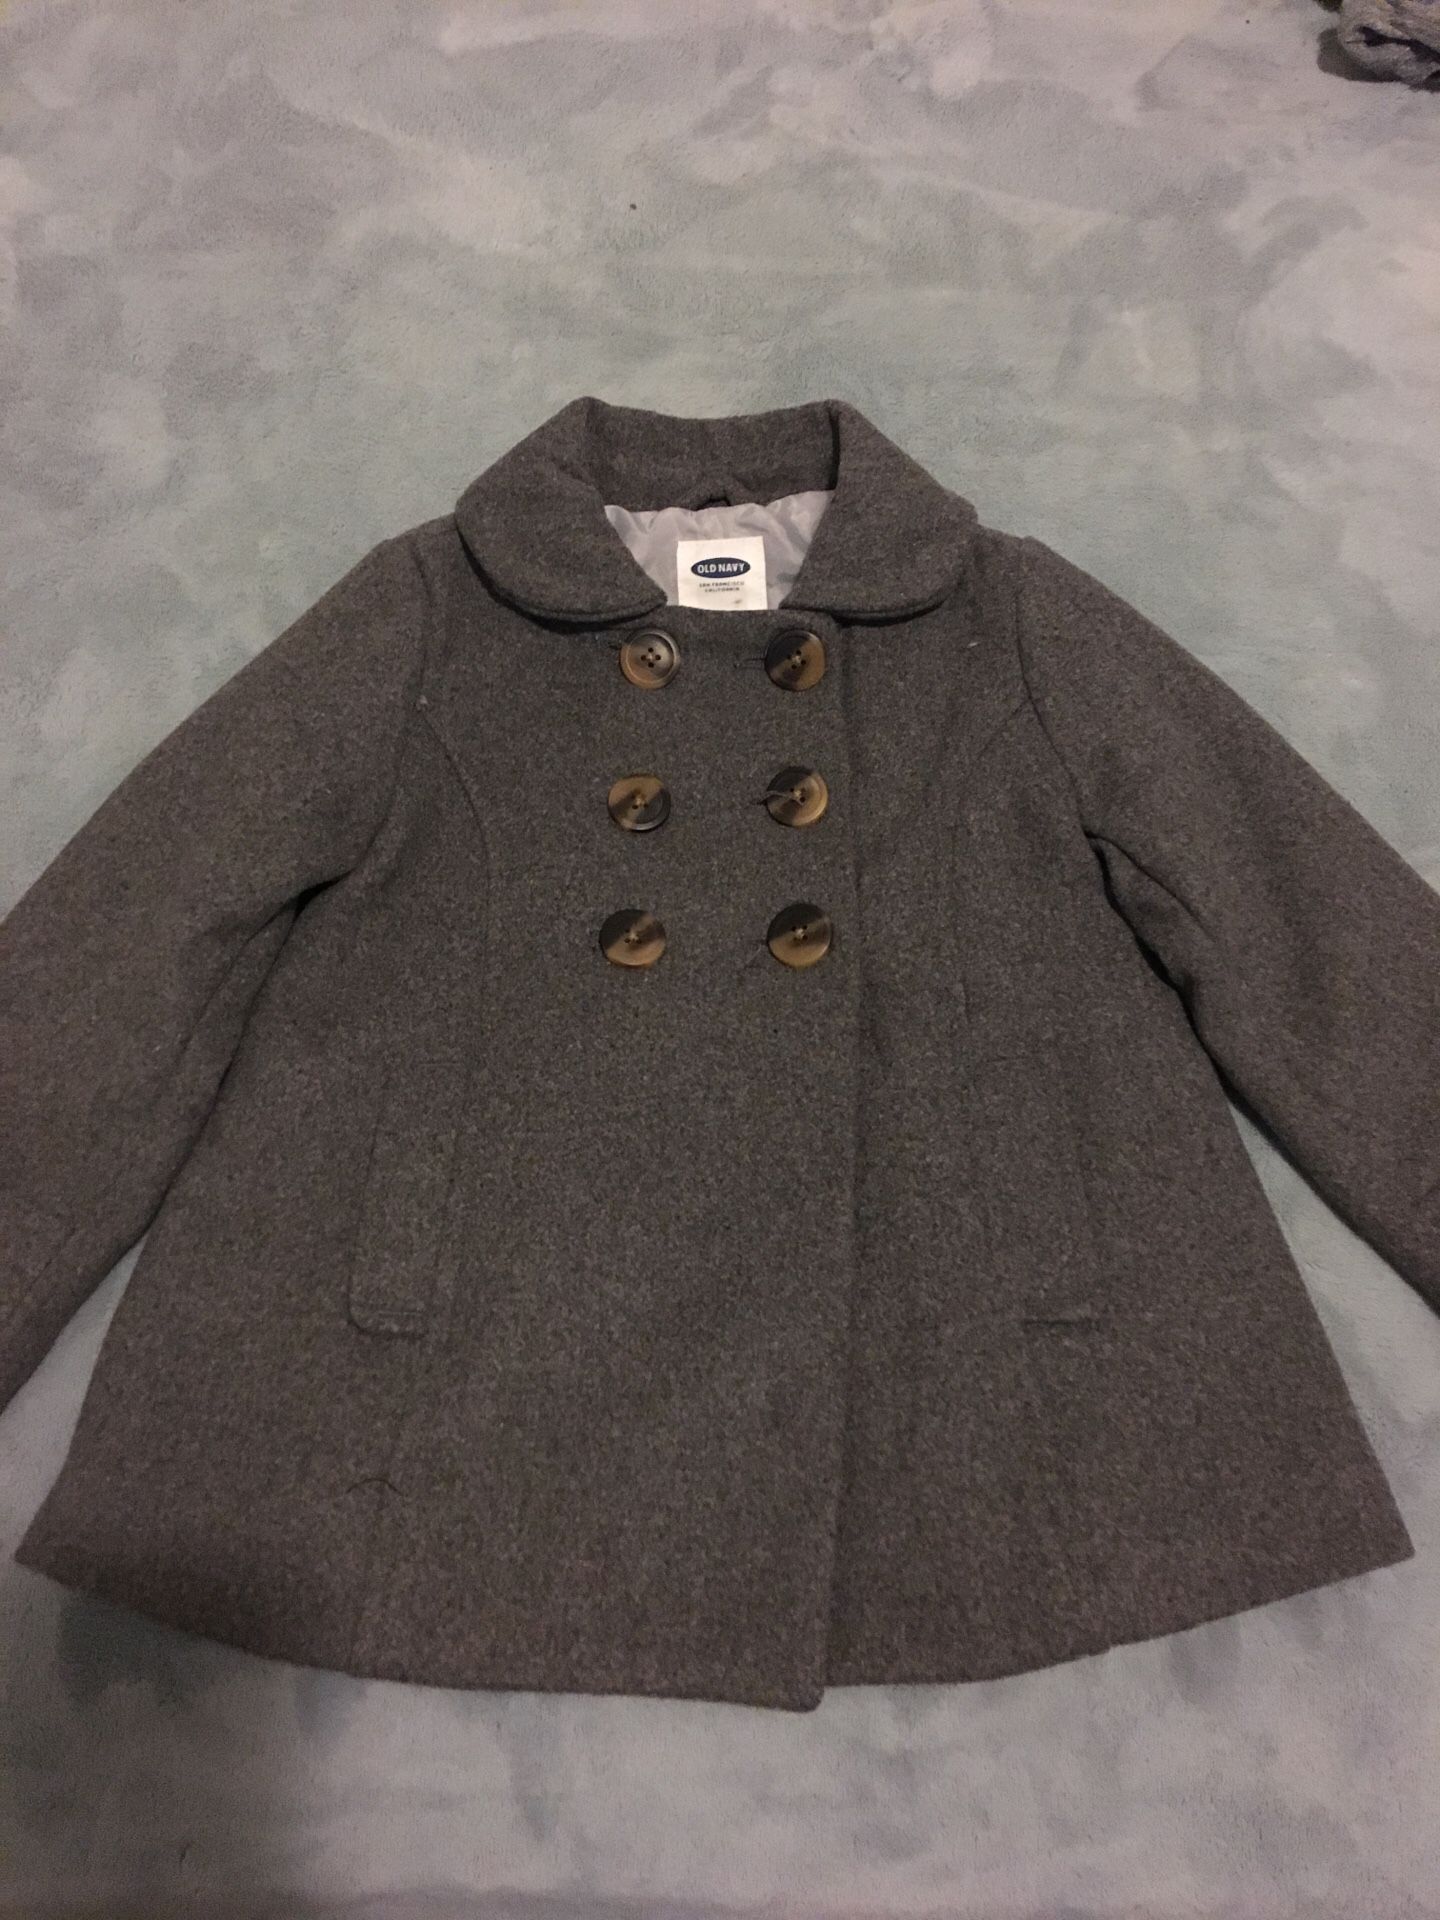 Old Navy coat